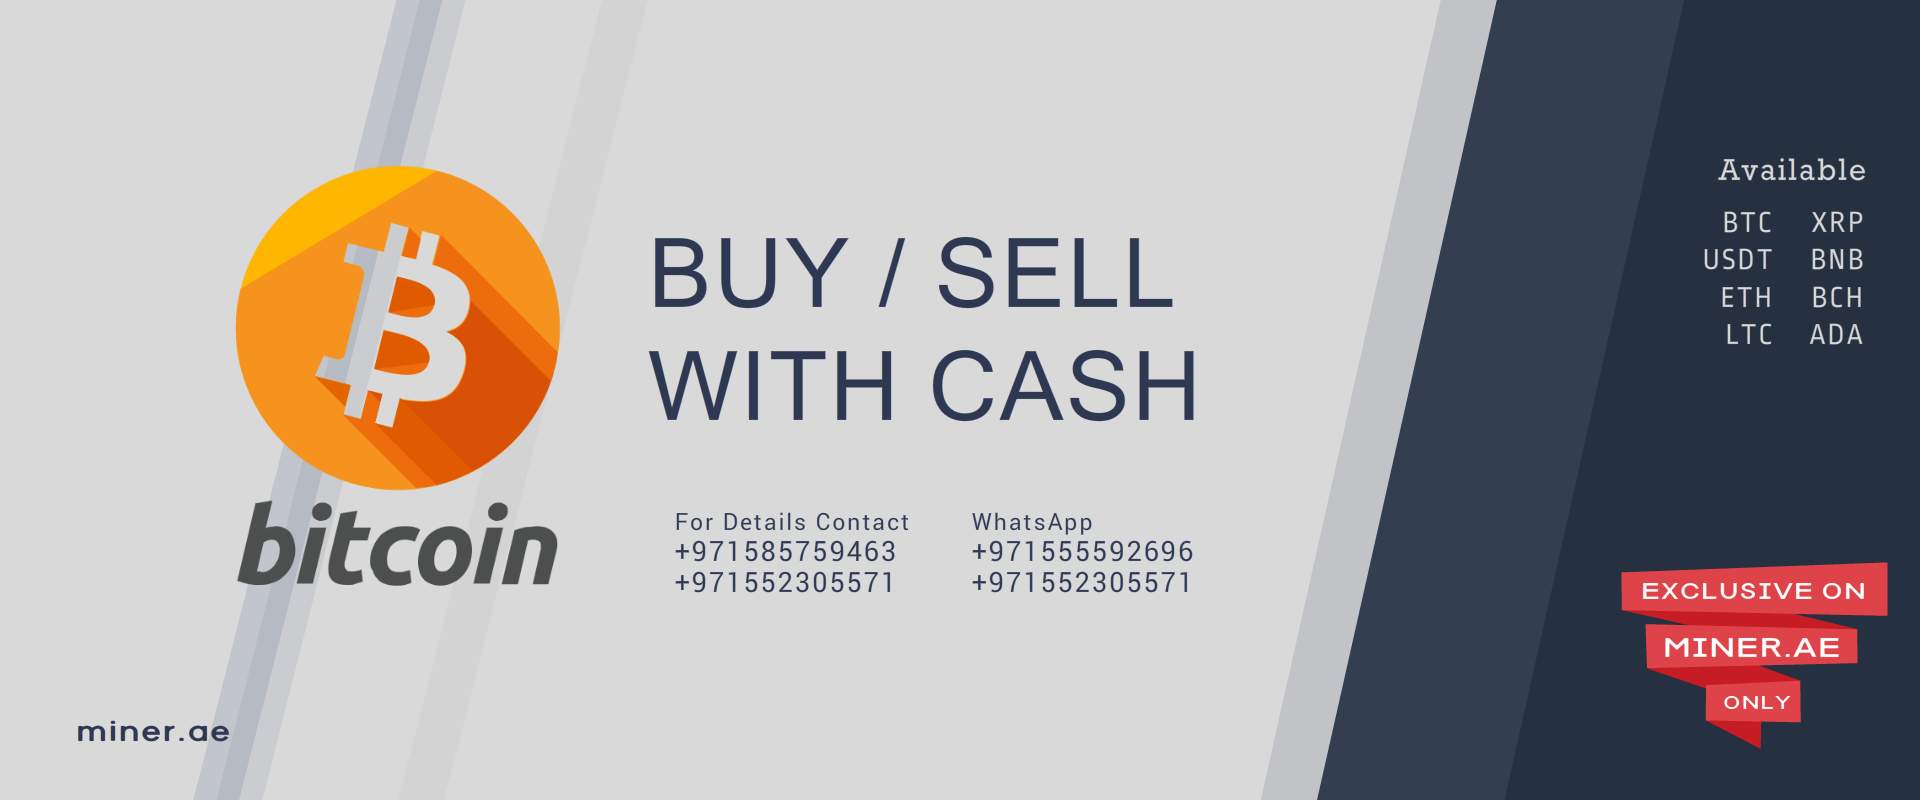 Sell / Buy Bitcoin in Dubai